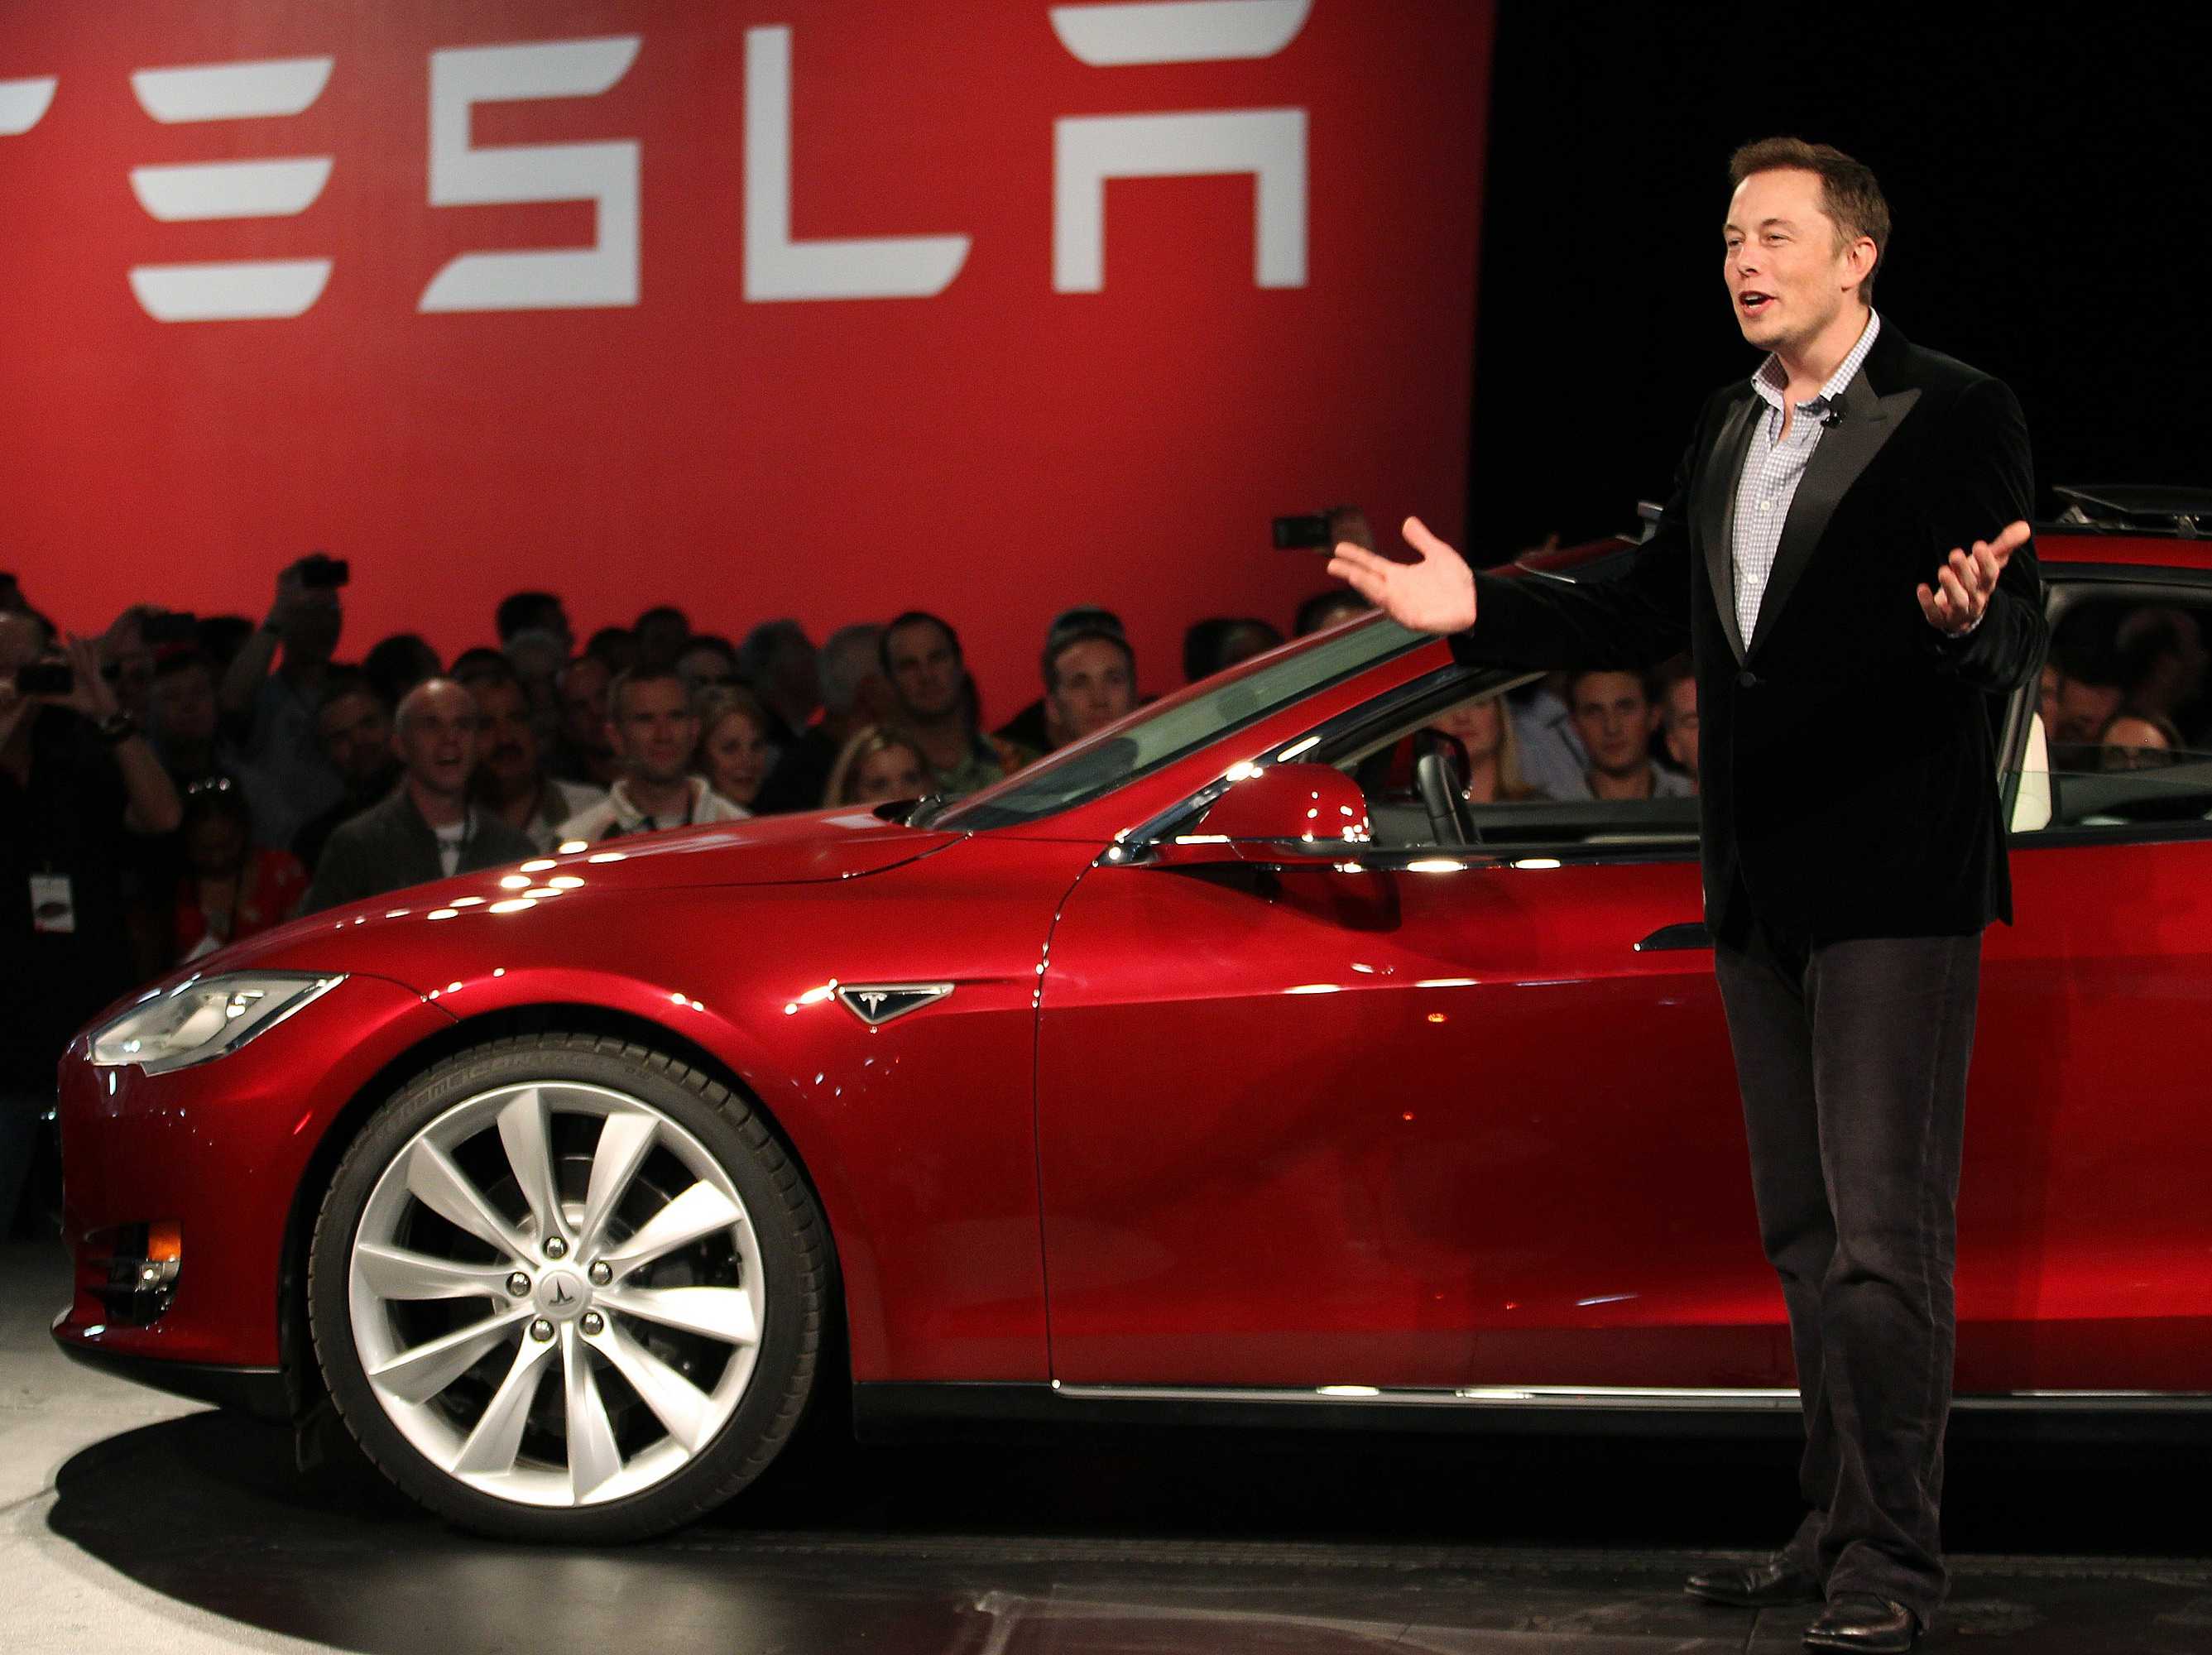 El fundador de Tesla Motors, Elon Musk, presentando su Model S.